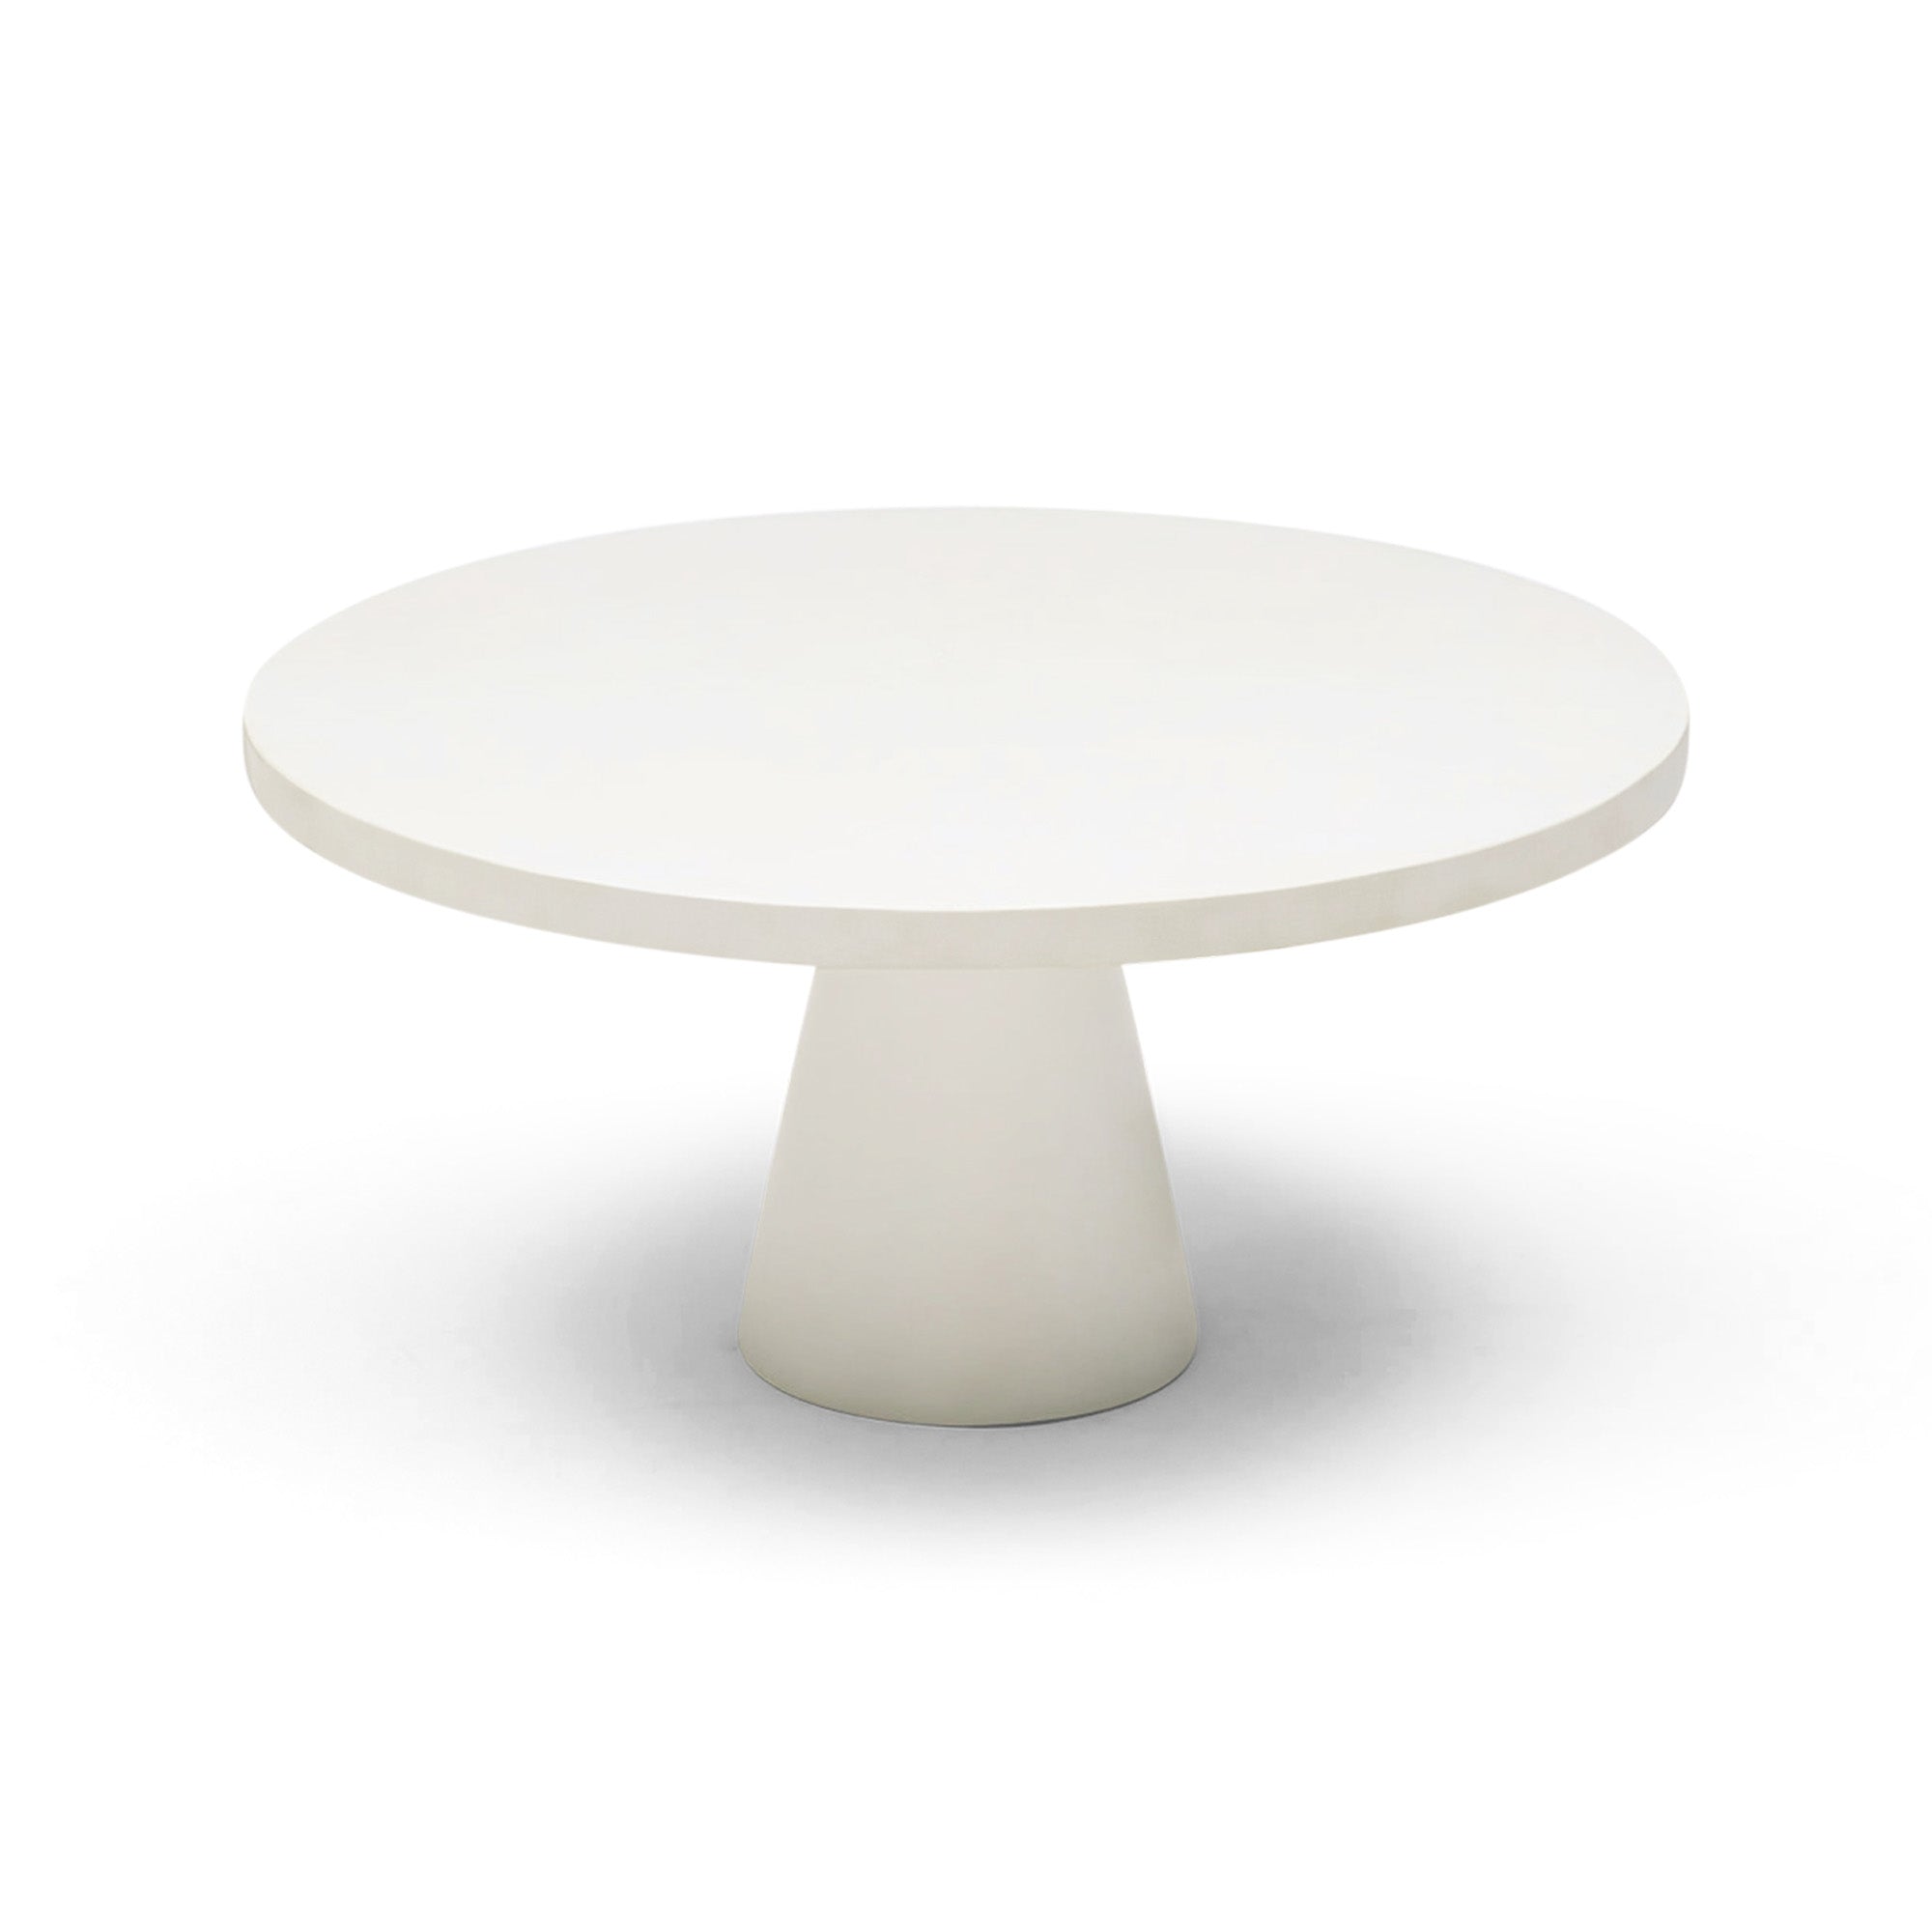 Ziba Coffee Table Concrete